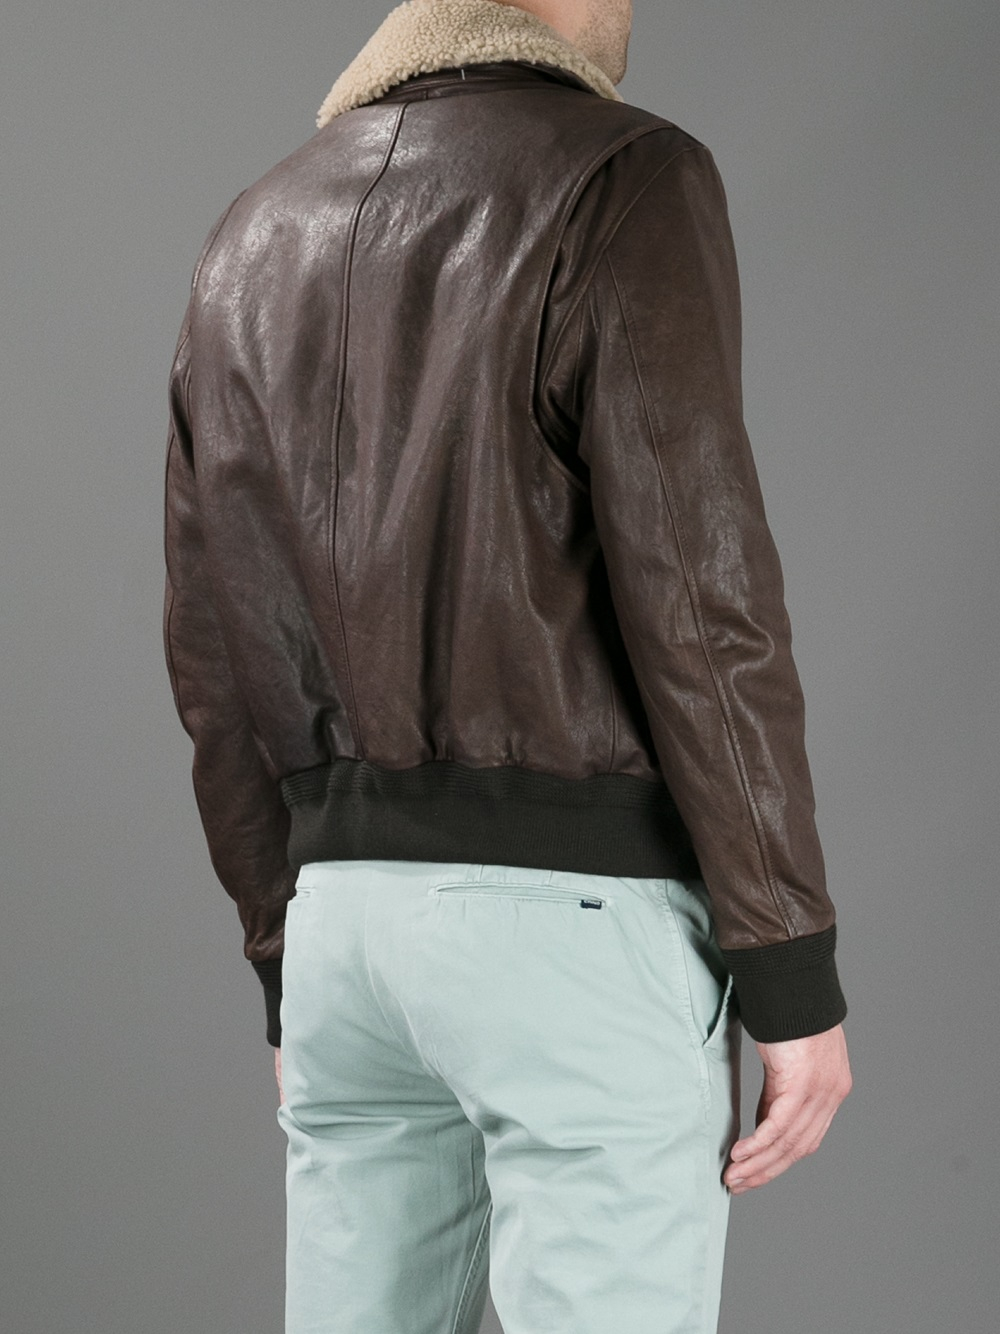 Hackett Leather Flight Jacket in Brown for Men - Lyst